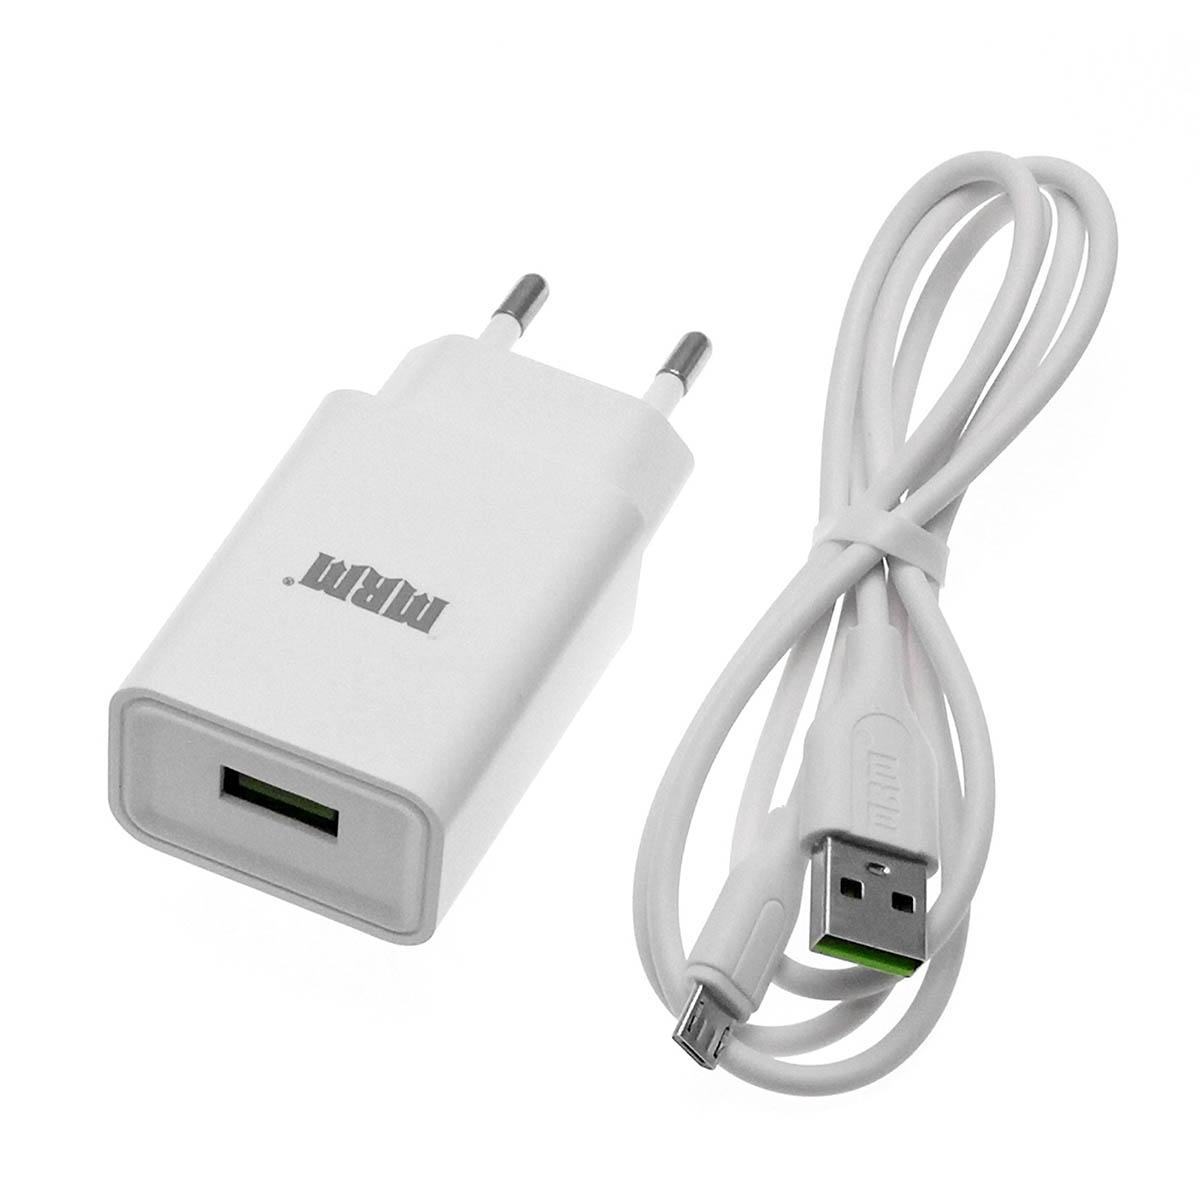 СЗУ (сетевое зарядное устройство) MRM MR21m, 1 USB порт 5V 2.4A MAX, кабель Micro USB, длина 1м, цвет белый